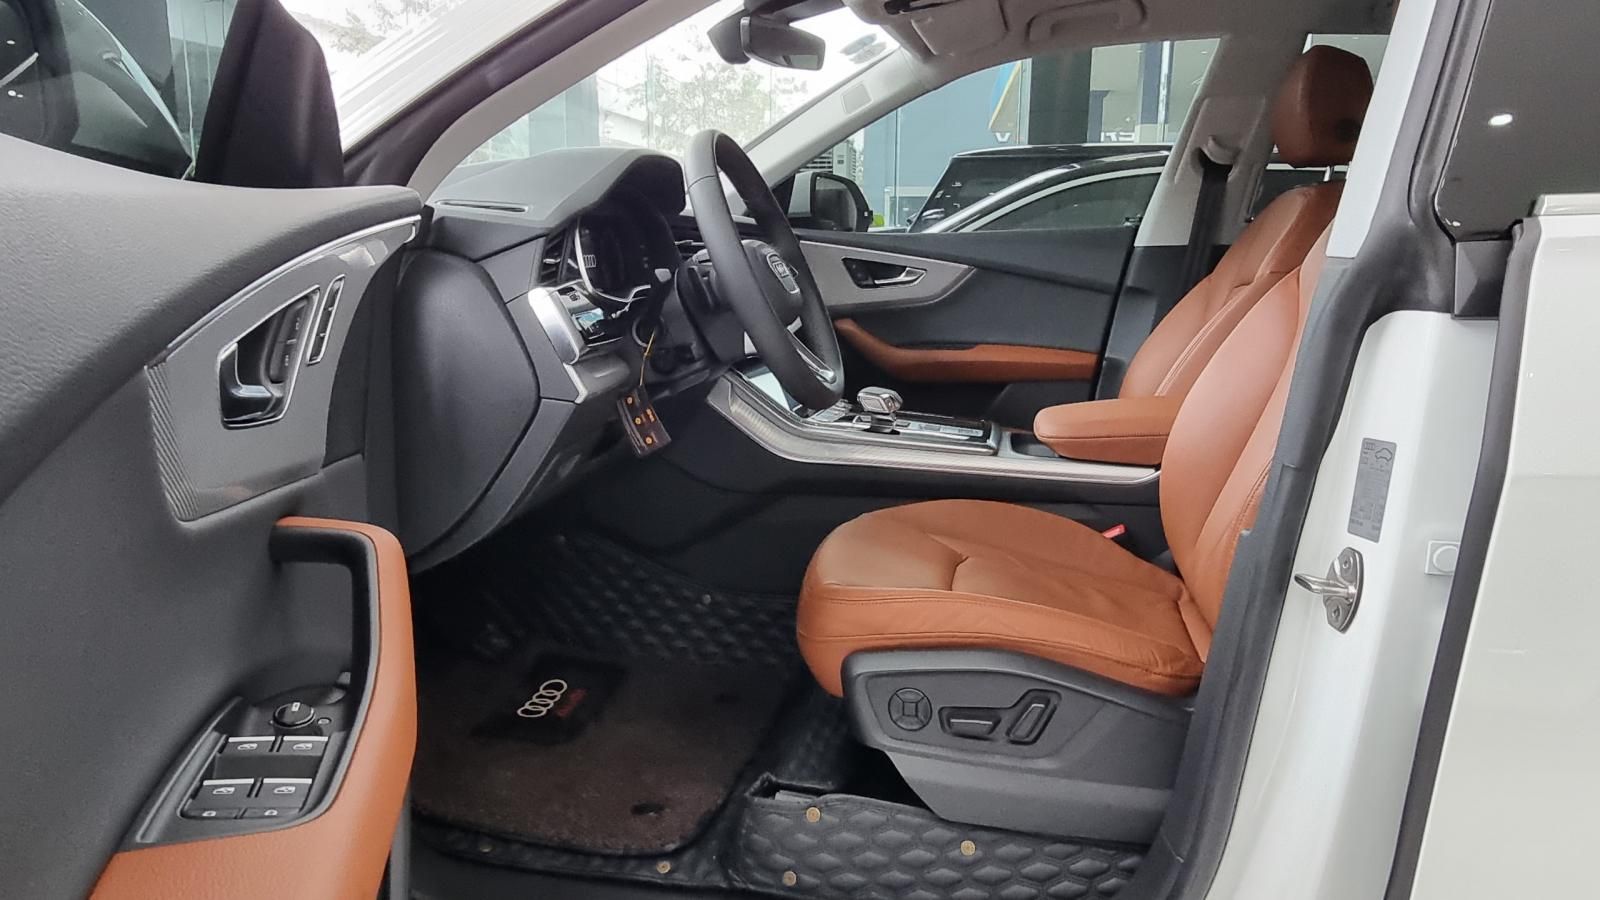 Audi Q8 2021 - 𝐁𝐚́𝐧 𝐀𝐮𝐝𝐢 𝐐𝟖 𝐒𝐥𝐢𝐧𝐞 𝟓𝟓𝐓𝐅𝐒𝐈 𝐐𝐮𝐚𝐭𝐭𝐫𝐨 𝐬𝐚̉𝐧 𝐱𝐮𝐚̂́𝐭 𝟐𝟎𝟐𝟏 𝐦𝐨𝐝𝐞𝐥 𝟐𝟎𝟐𝟐